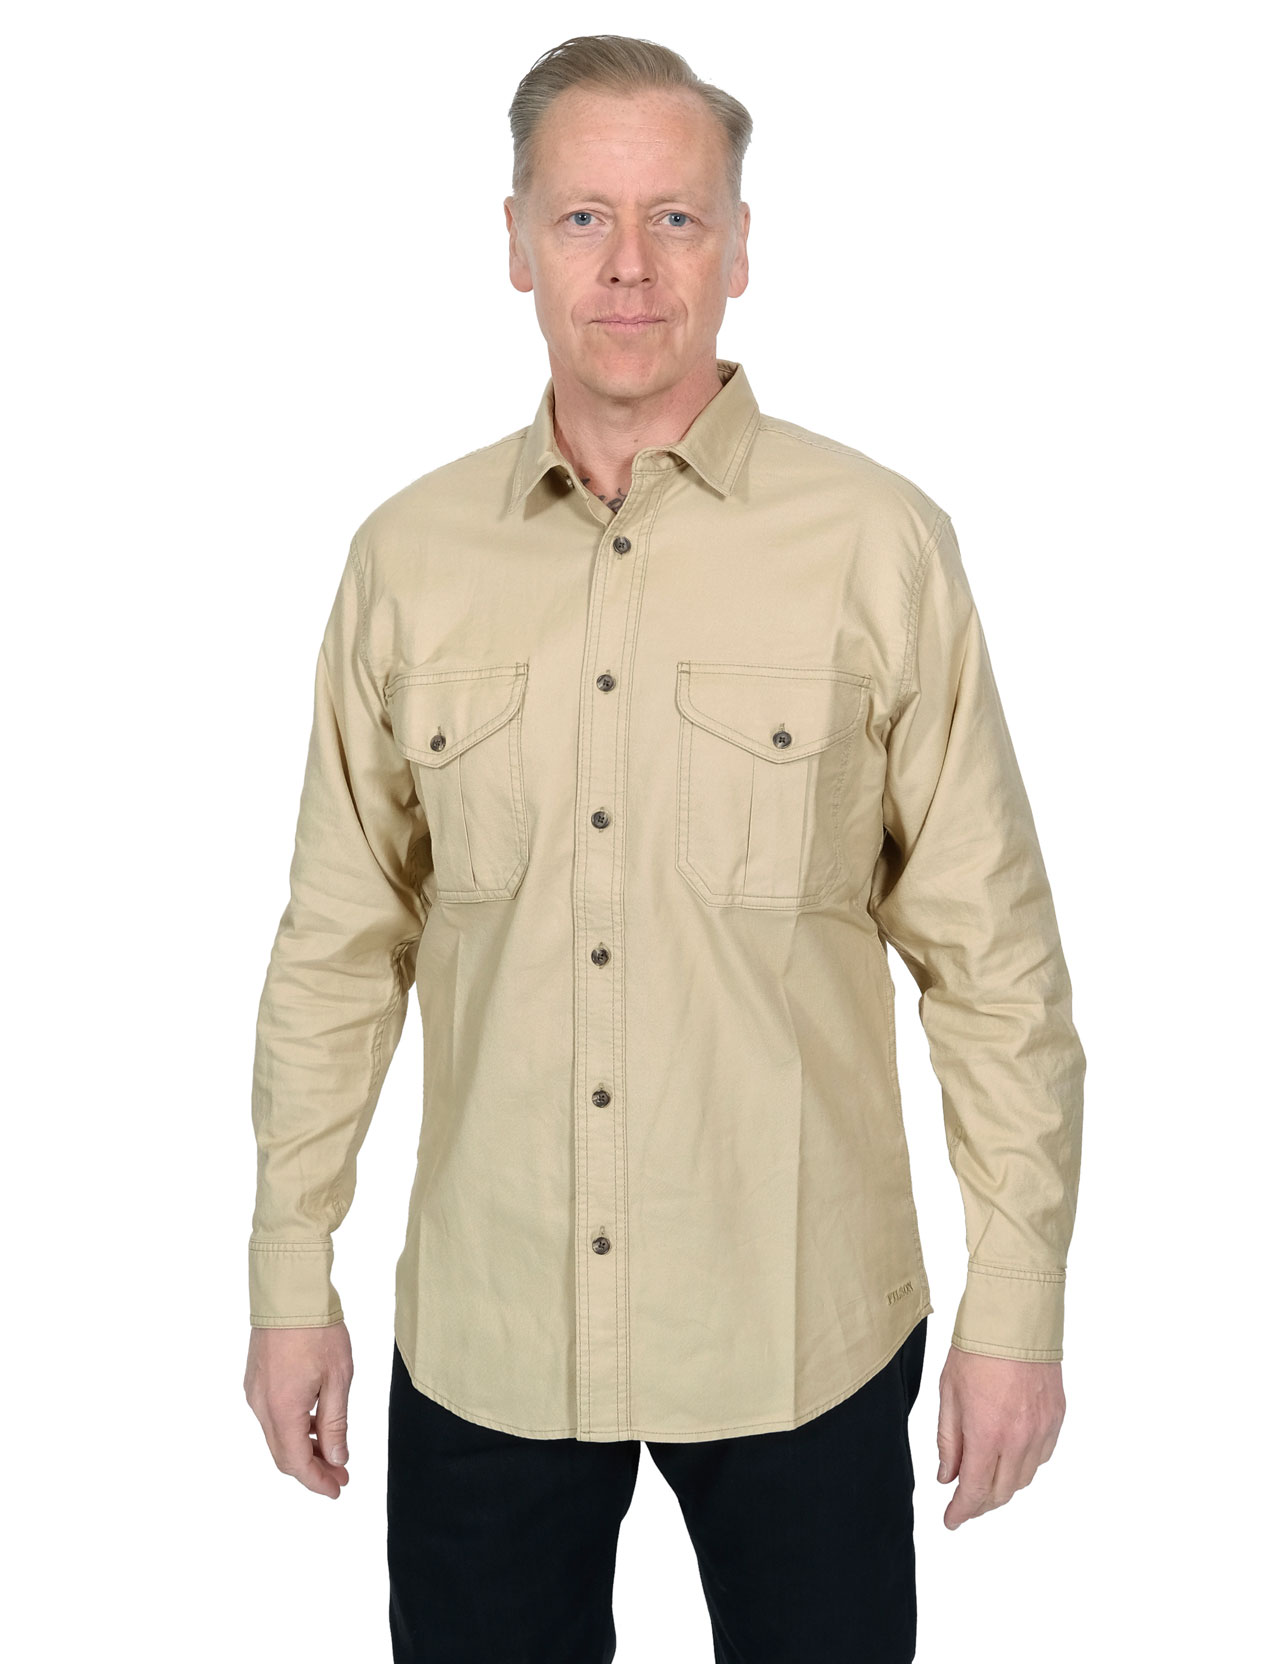 Filson - Lightweight Alaskan Guide Shirt - Light Khaki